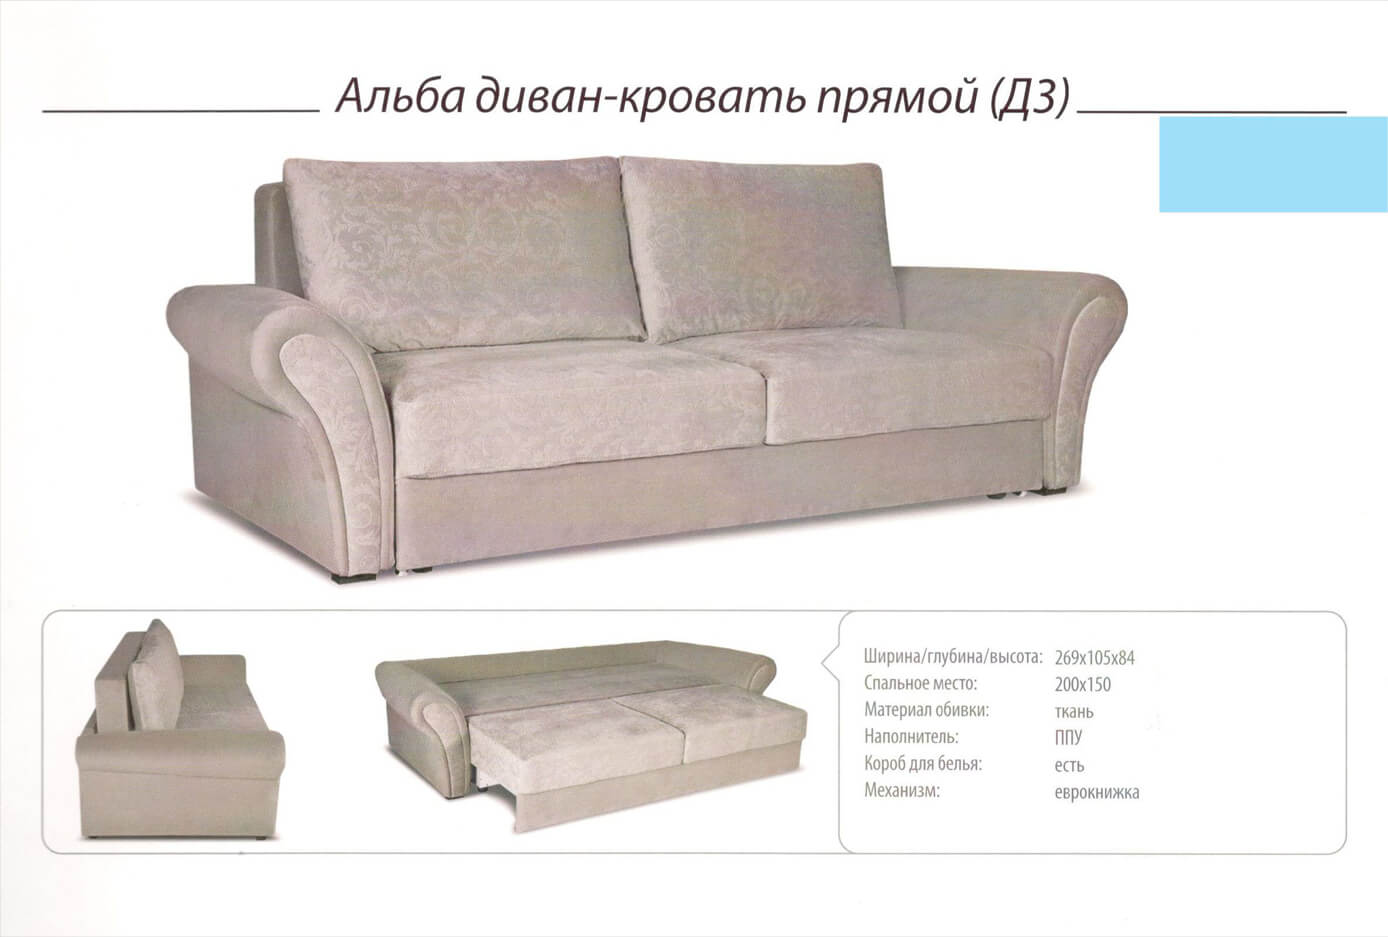 Купить Мебель В Павлодаре Интернет Магазин